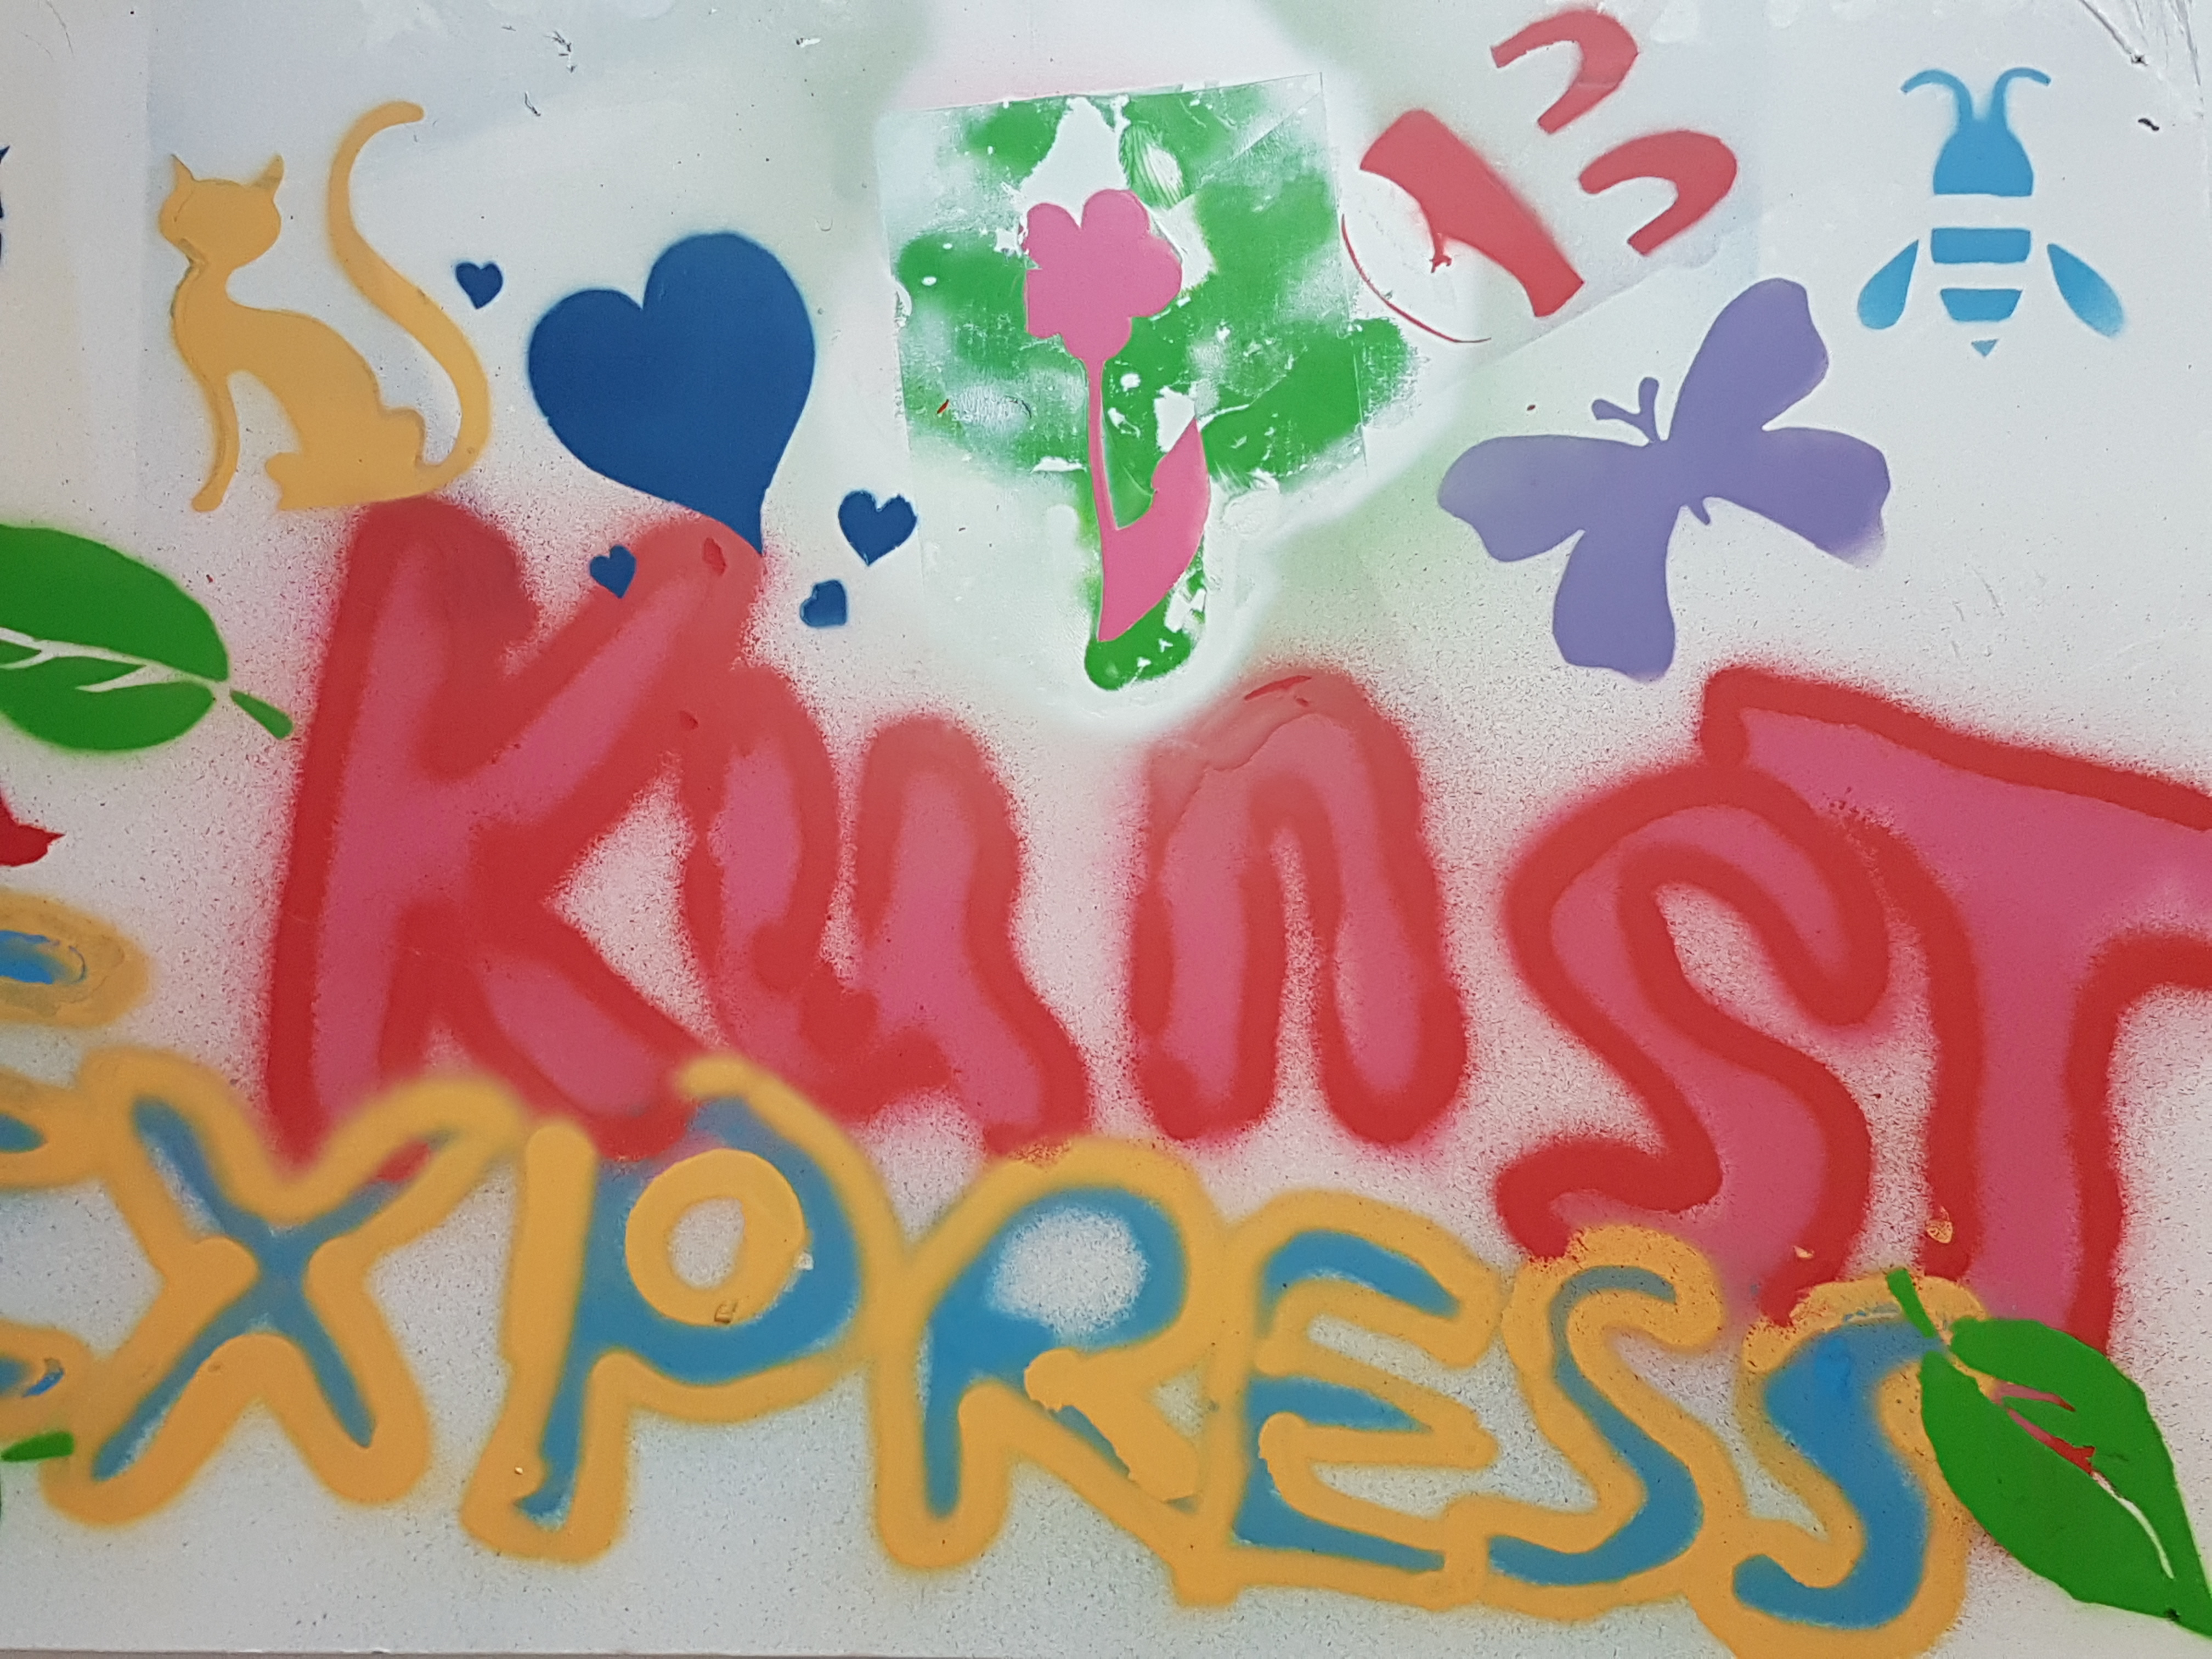 Het maatjesproject KunstExpress gaat in november starten